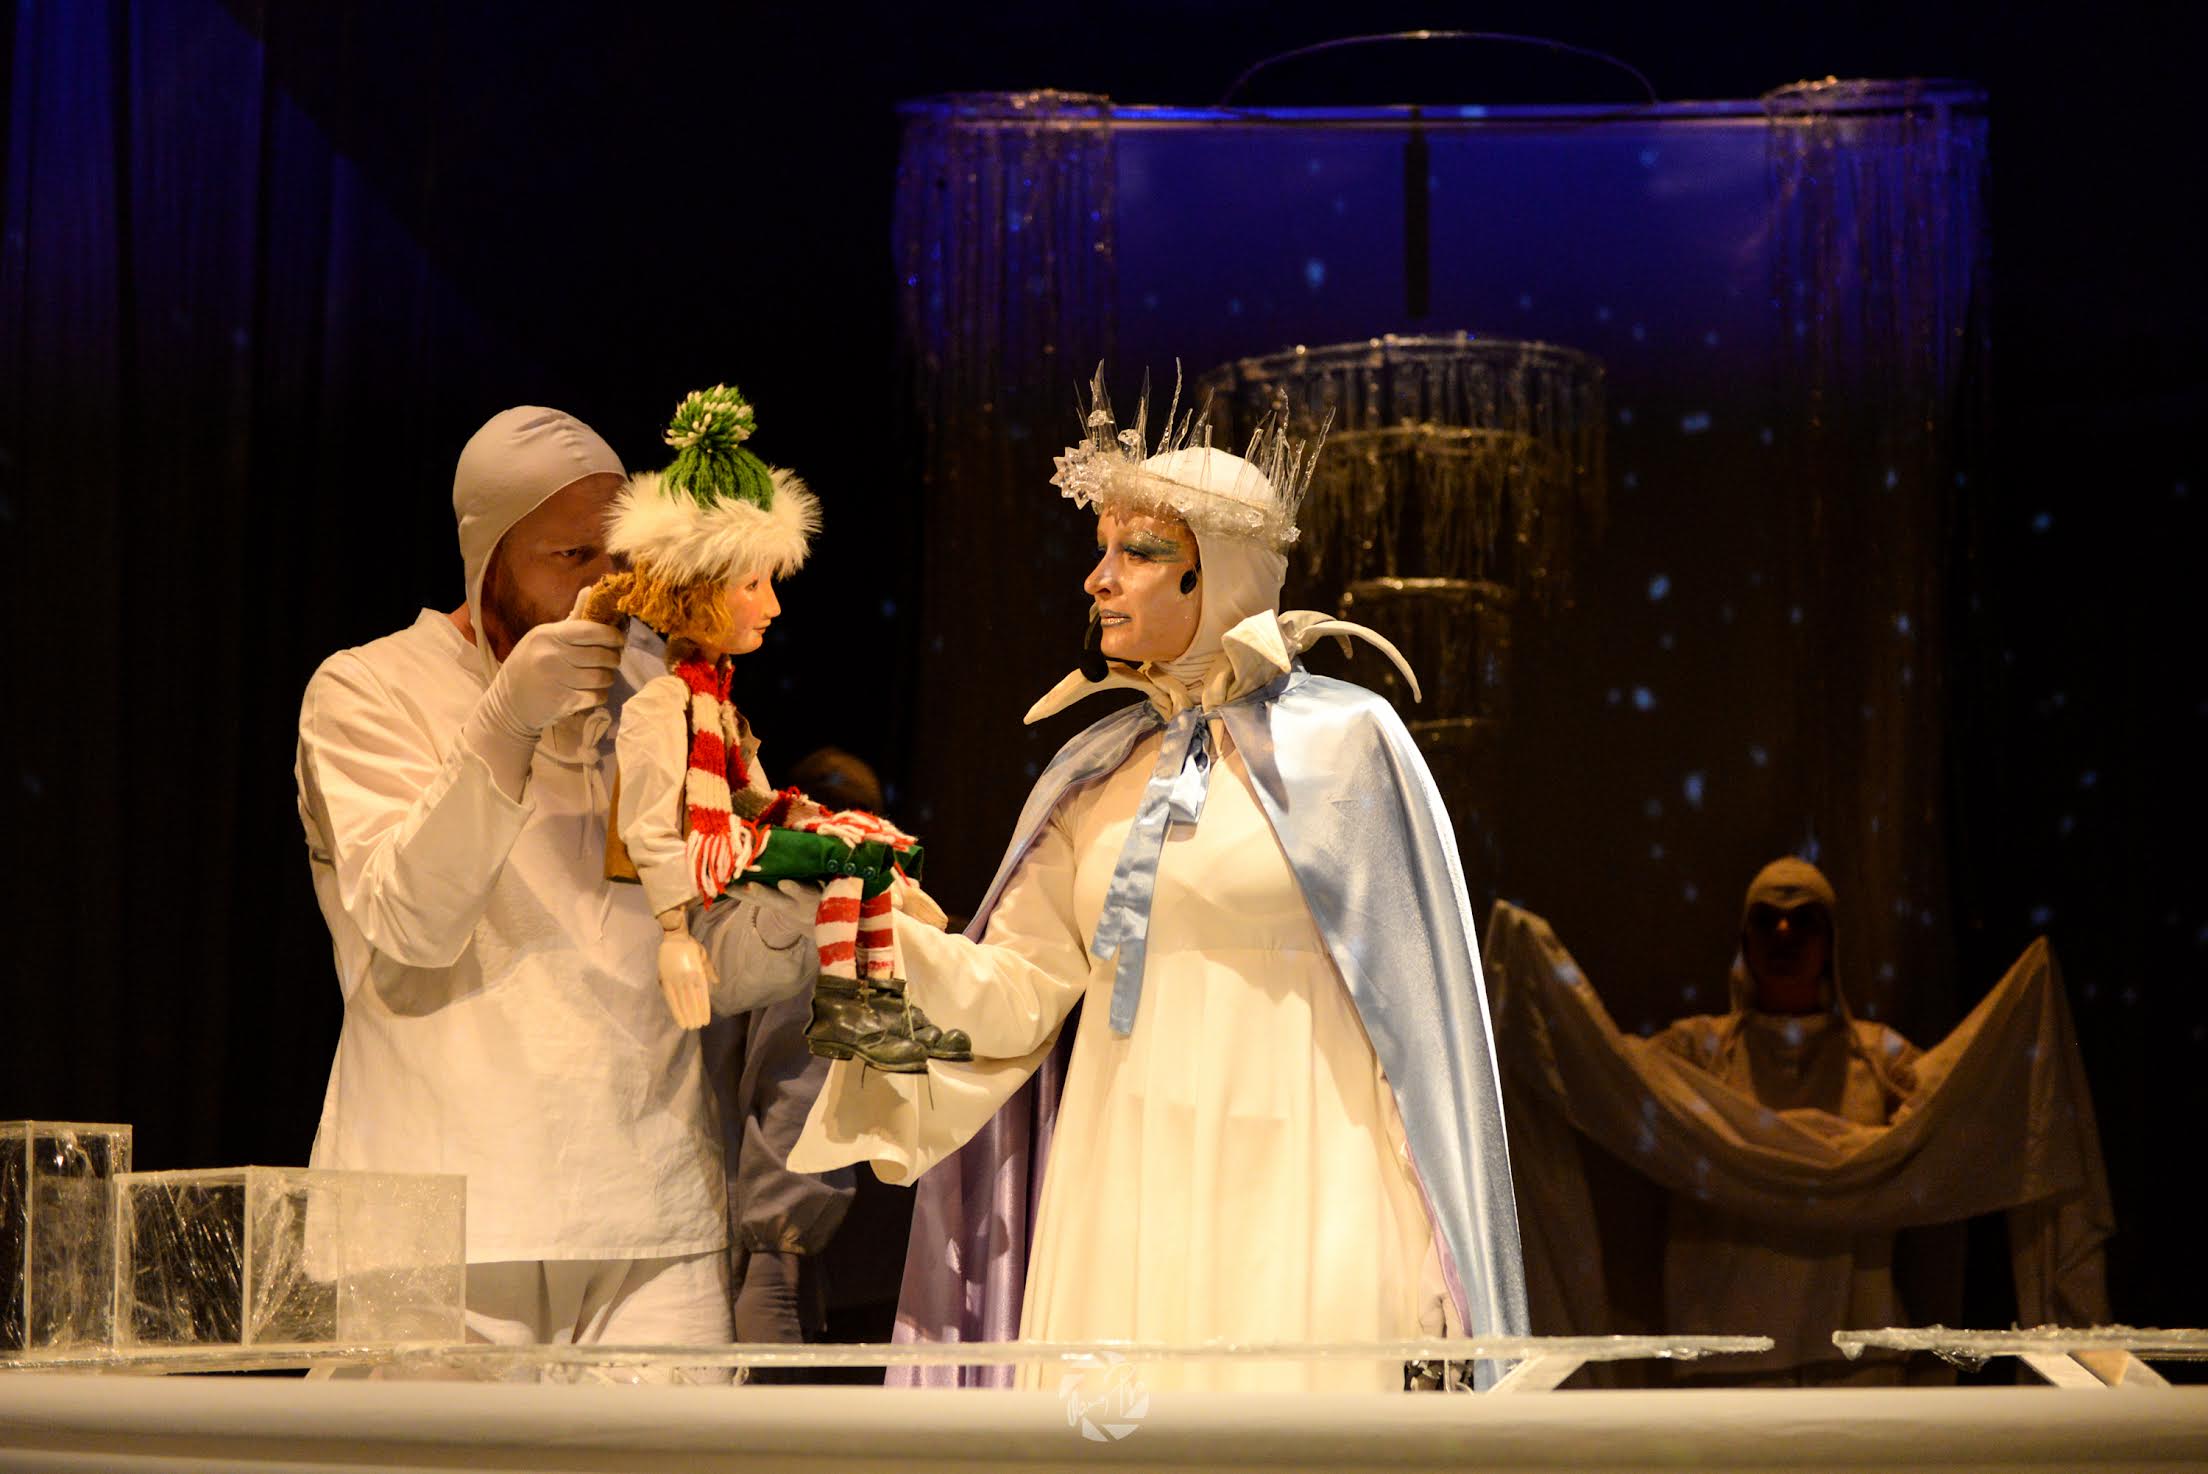 Crăiasa Zăpezii revine pe scena Teatrului „Puck”